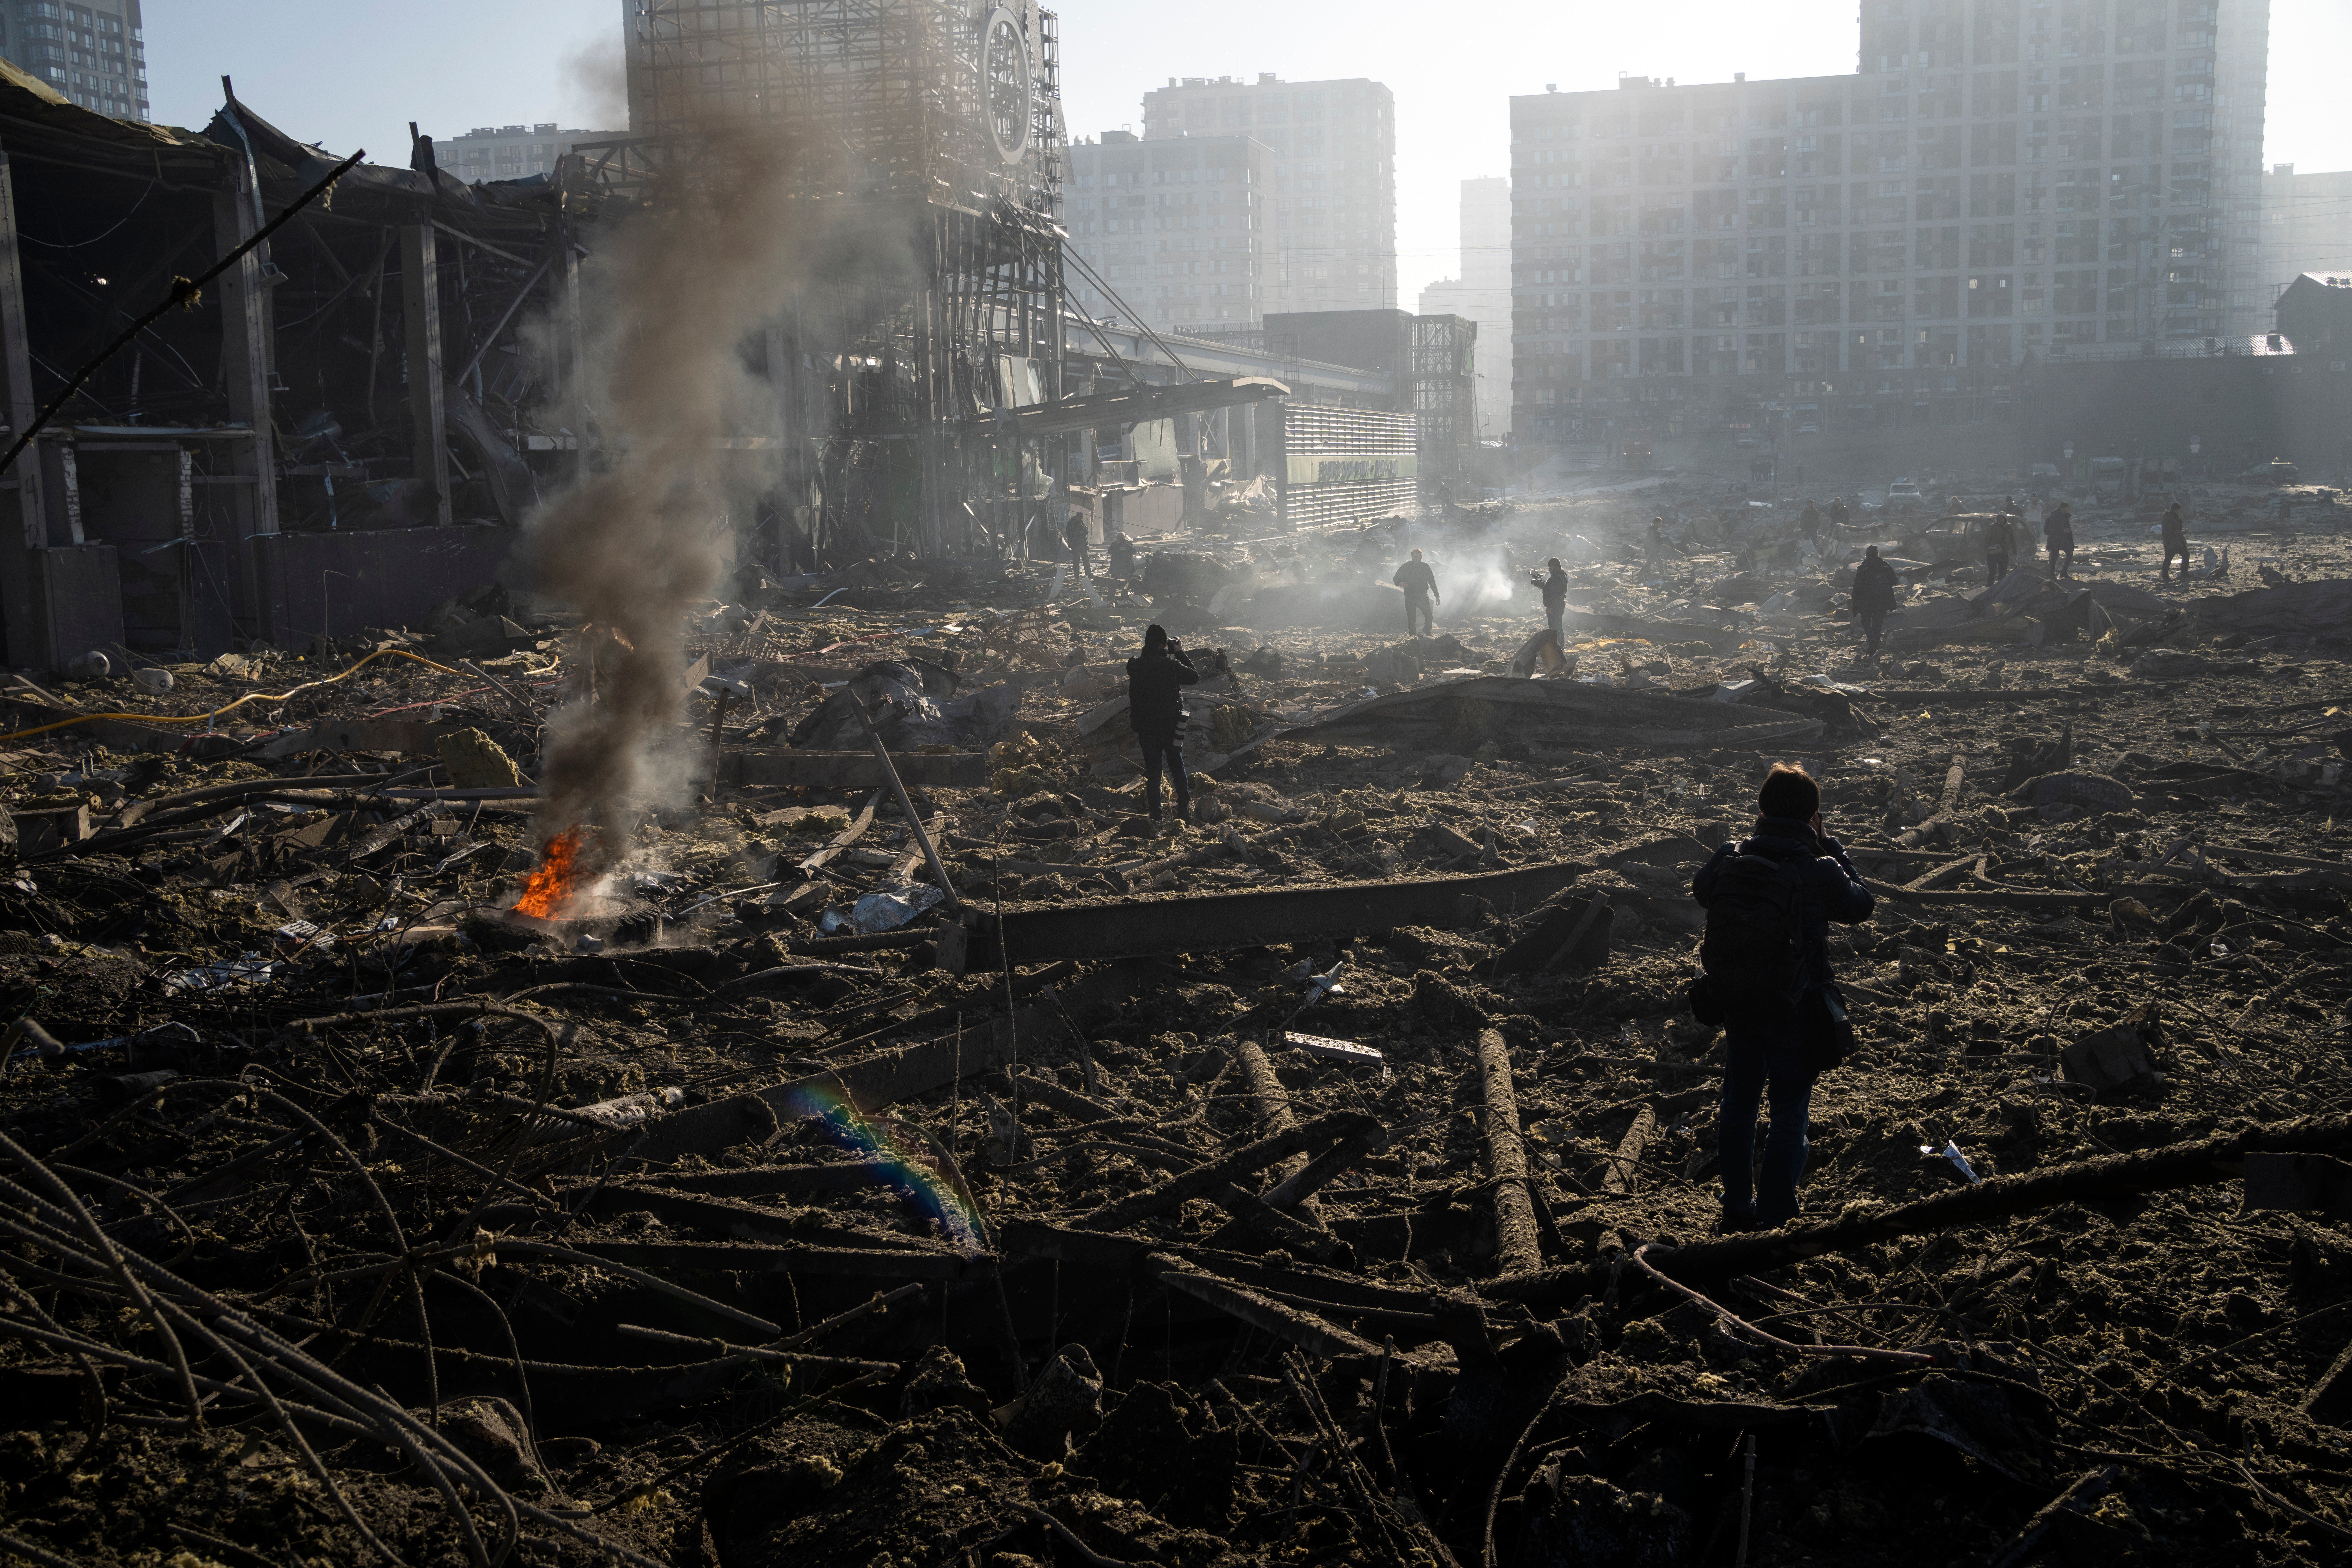 Urban damage in the Russia Ukraine war